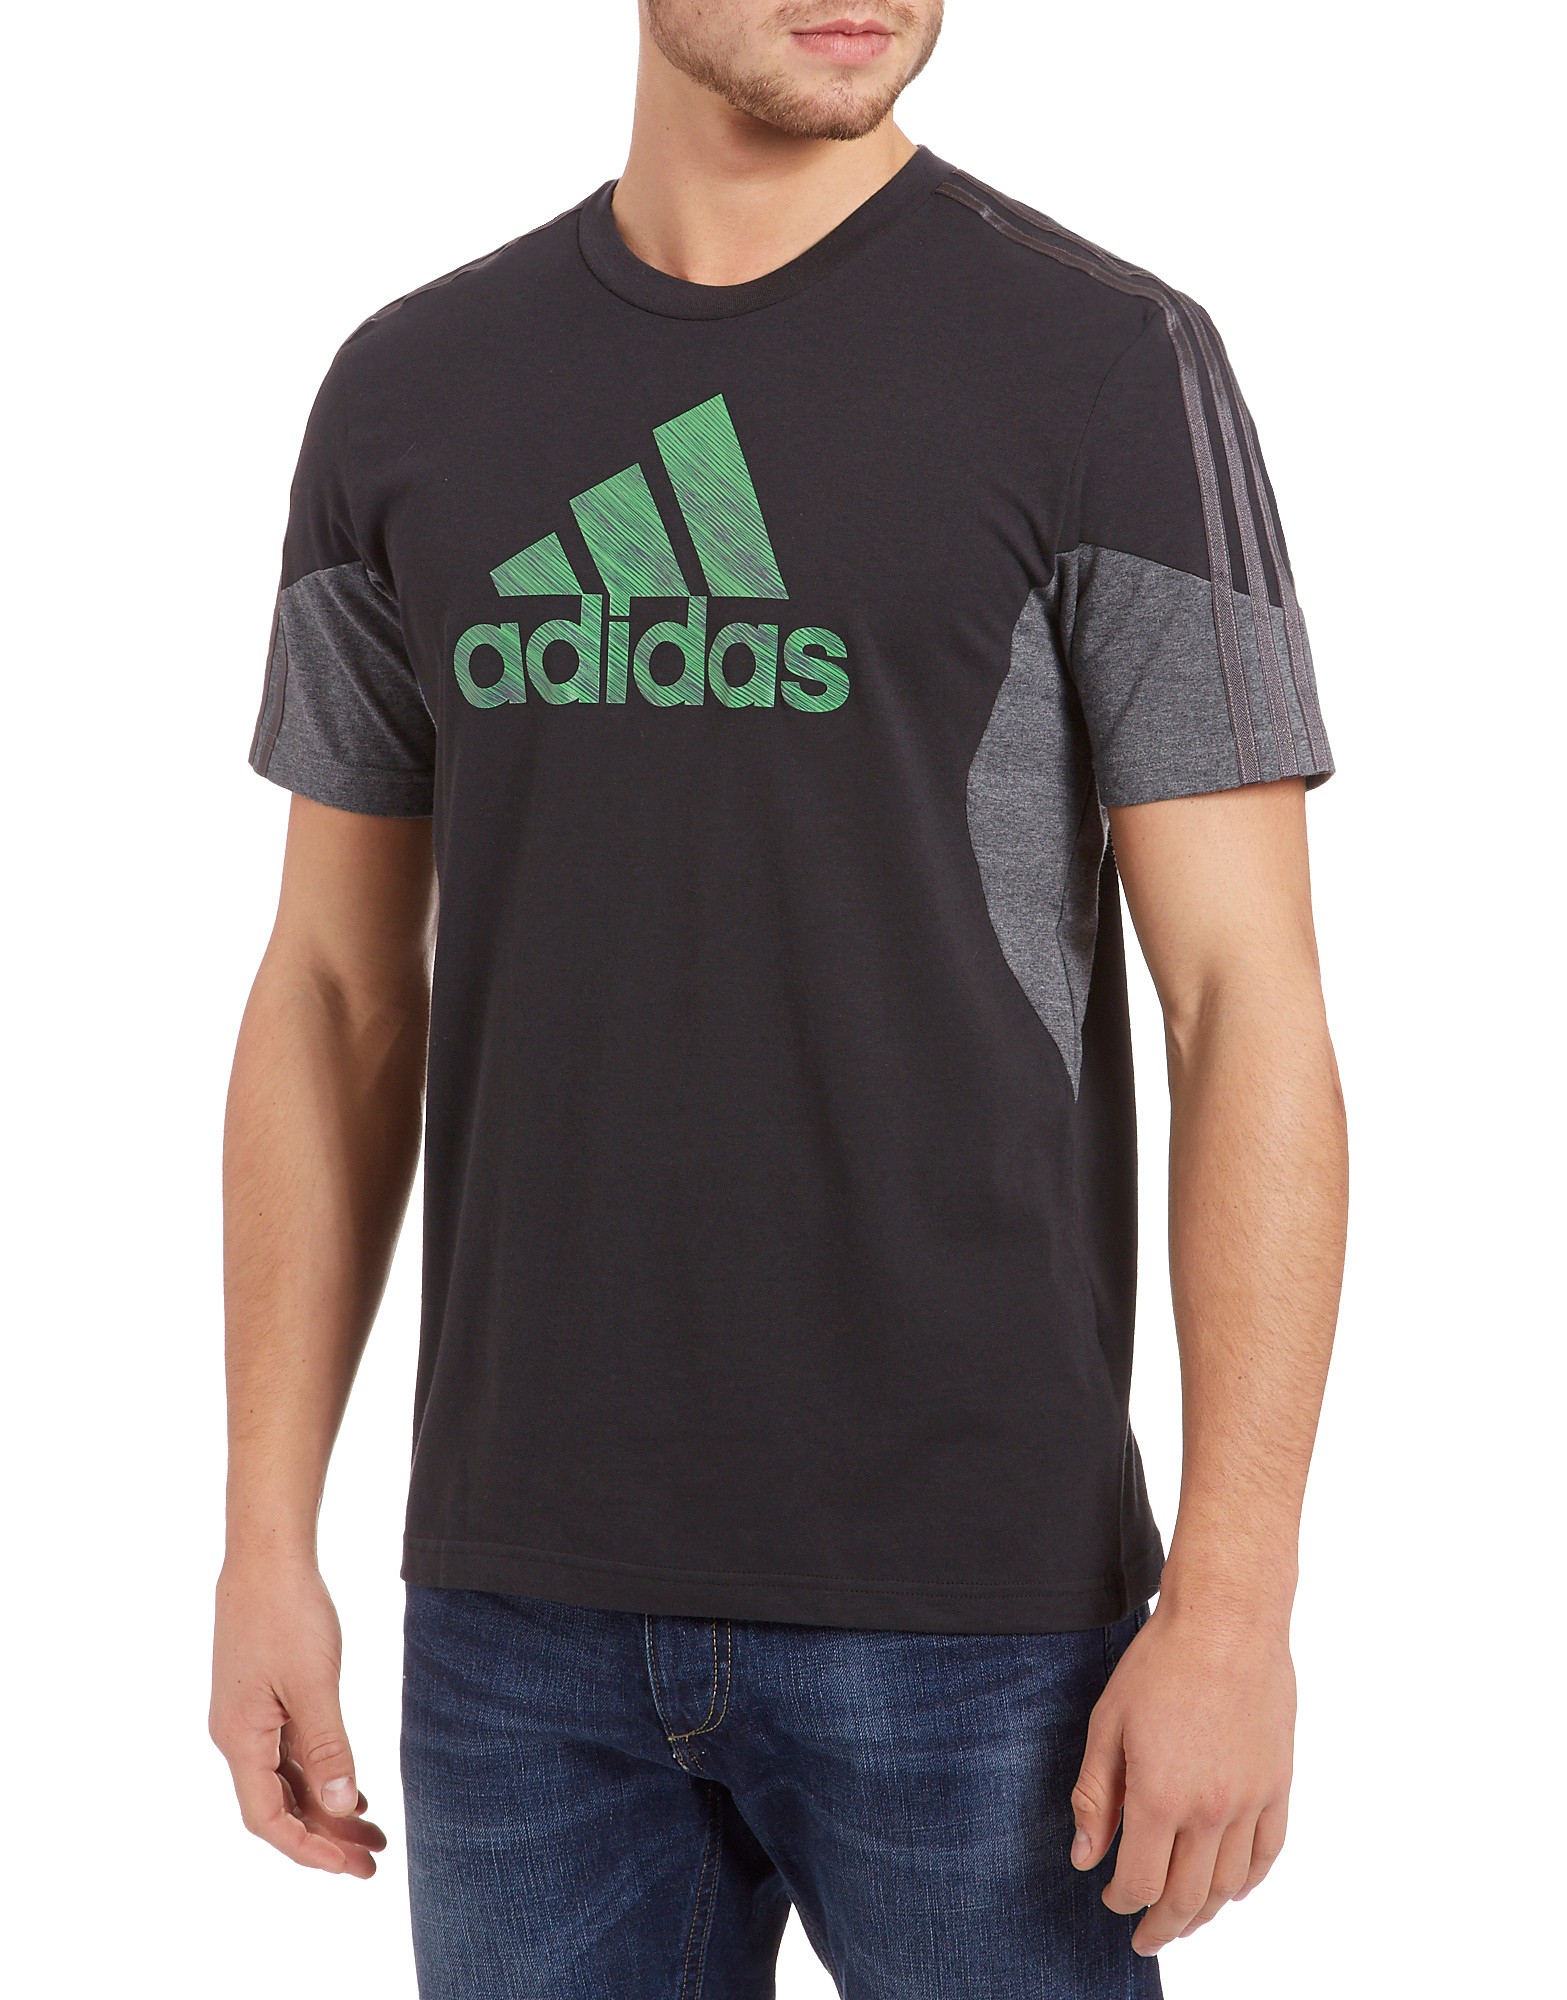 Adidas Destruct Logo T-Shirt